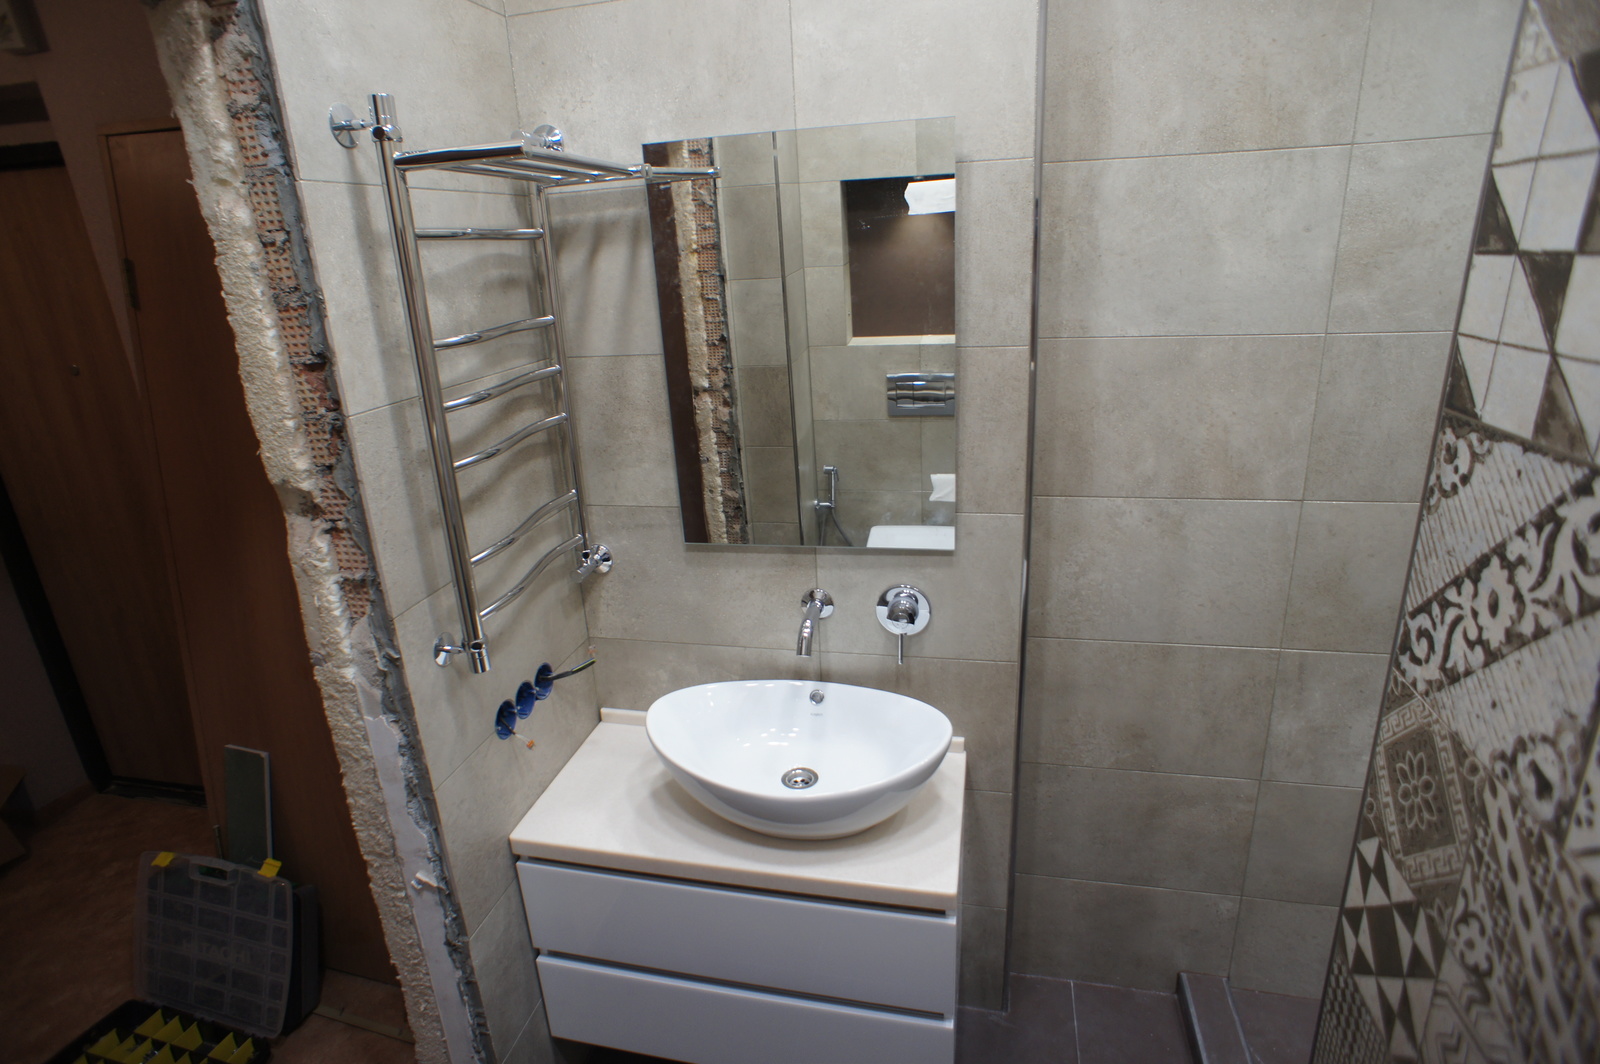 Bathroom renovation part 6 - My, Repair, Krasnoyarsk, Longpost, , Courage, Combined bathroom